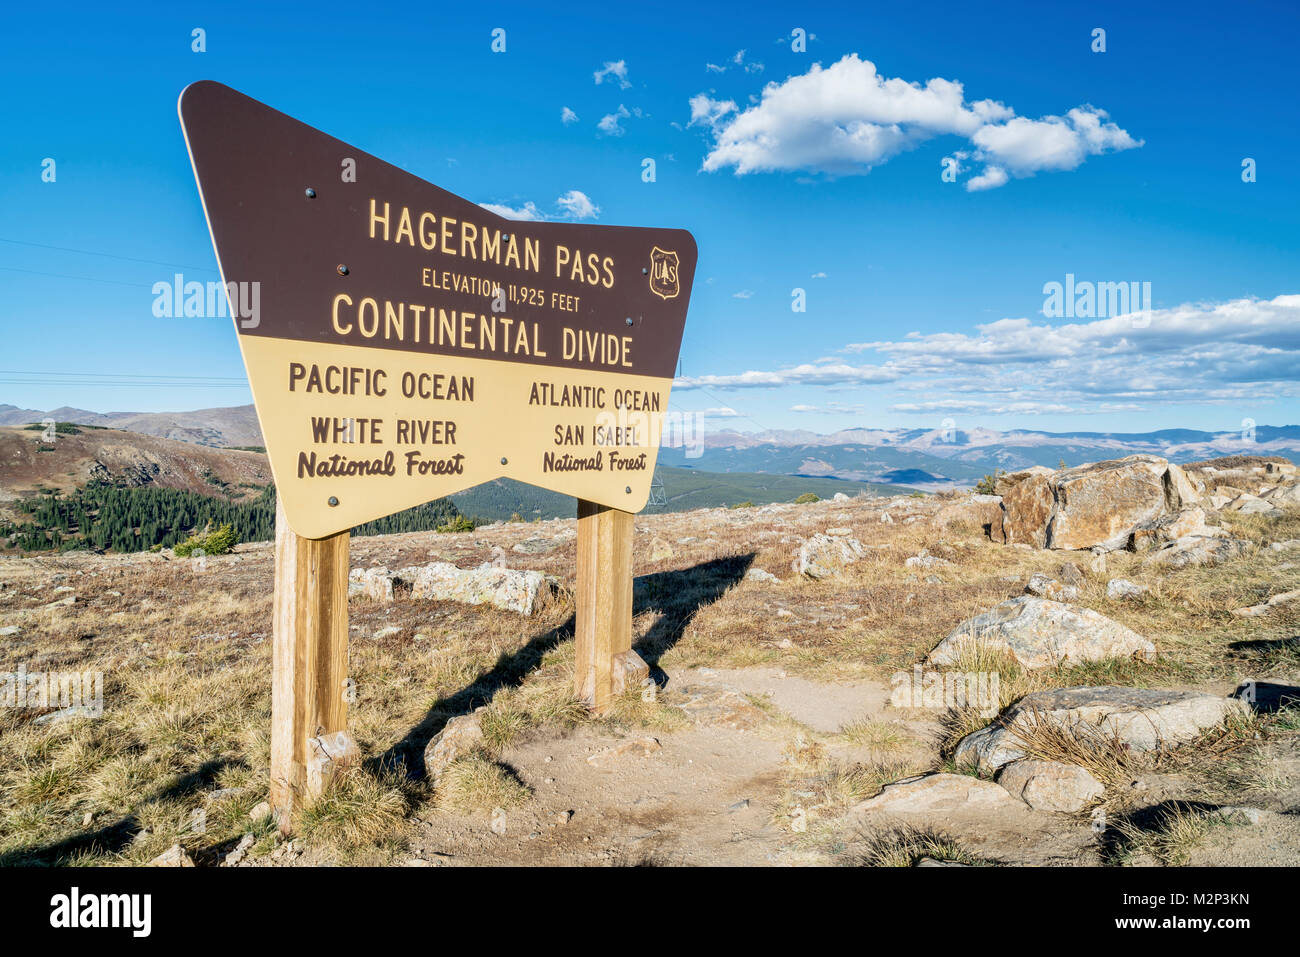 Pase HAGERMAN, Septiembre 27, 2016: el Servicio Forestal de Estados Unidos firmar en una cumbre de Hagerman Pass y la divisoria continental en las Montañas Rocosas de Colorado. Foto de stock